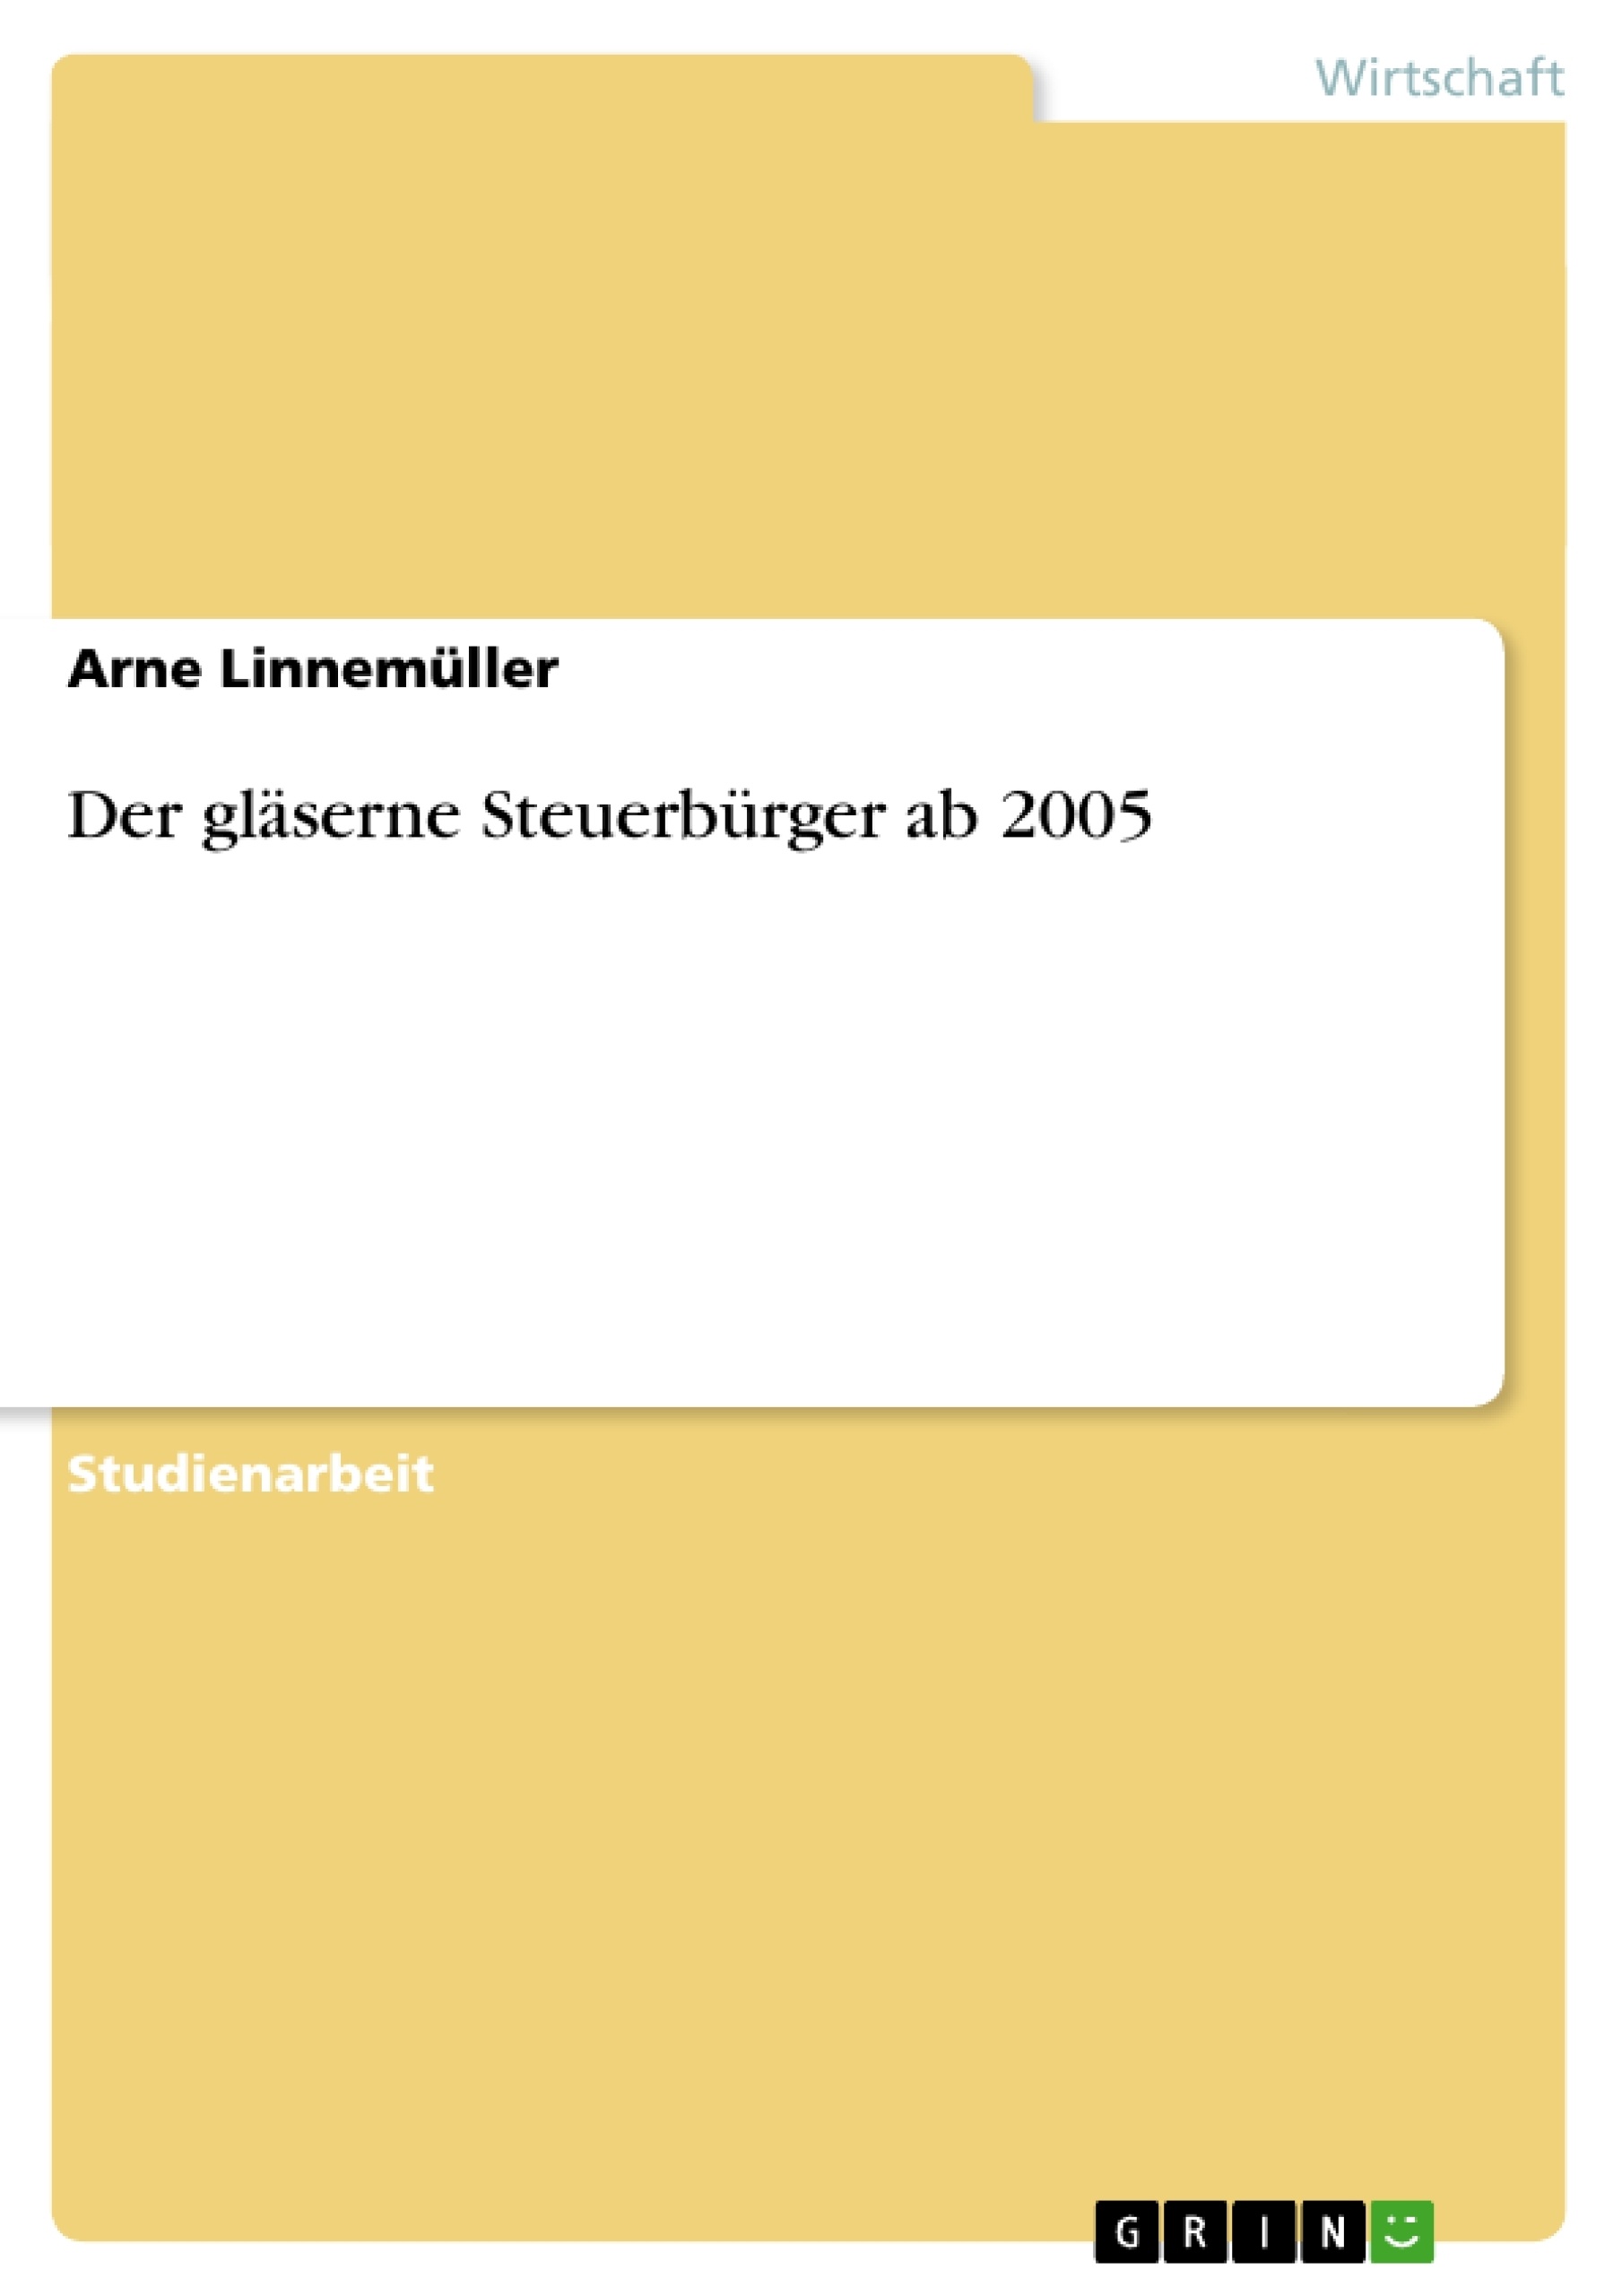 Título: Der gläserne Steuerbürger ab 2005